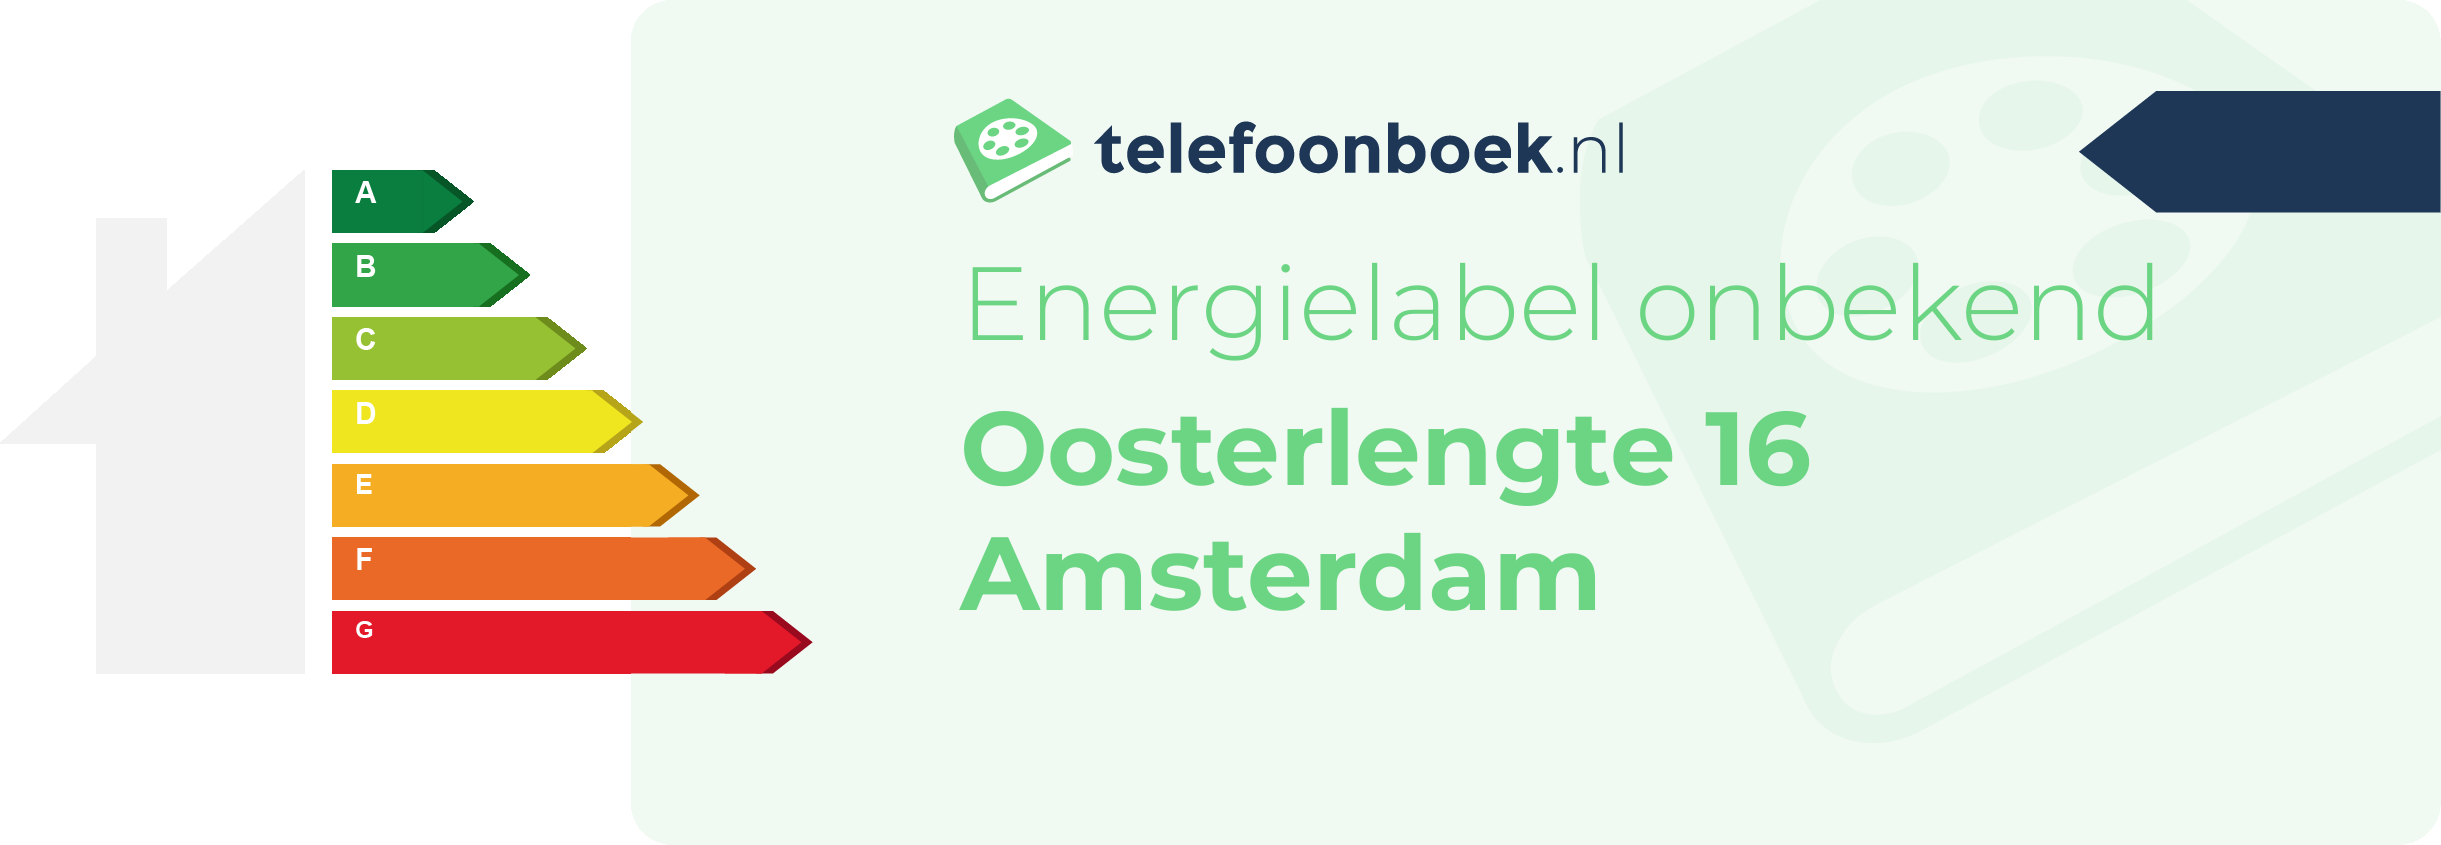 Energielabel Oosterlengte 16 Amsterdam